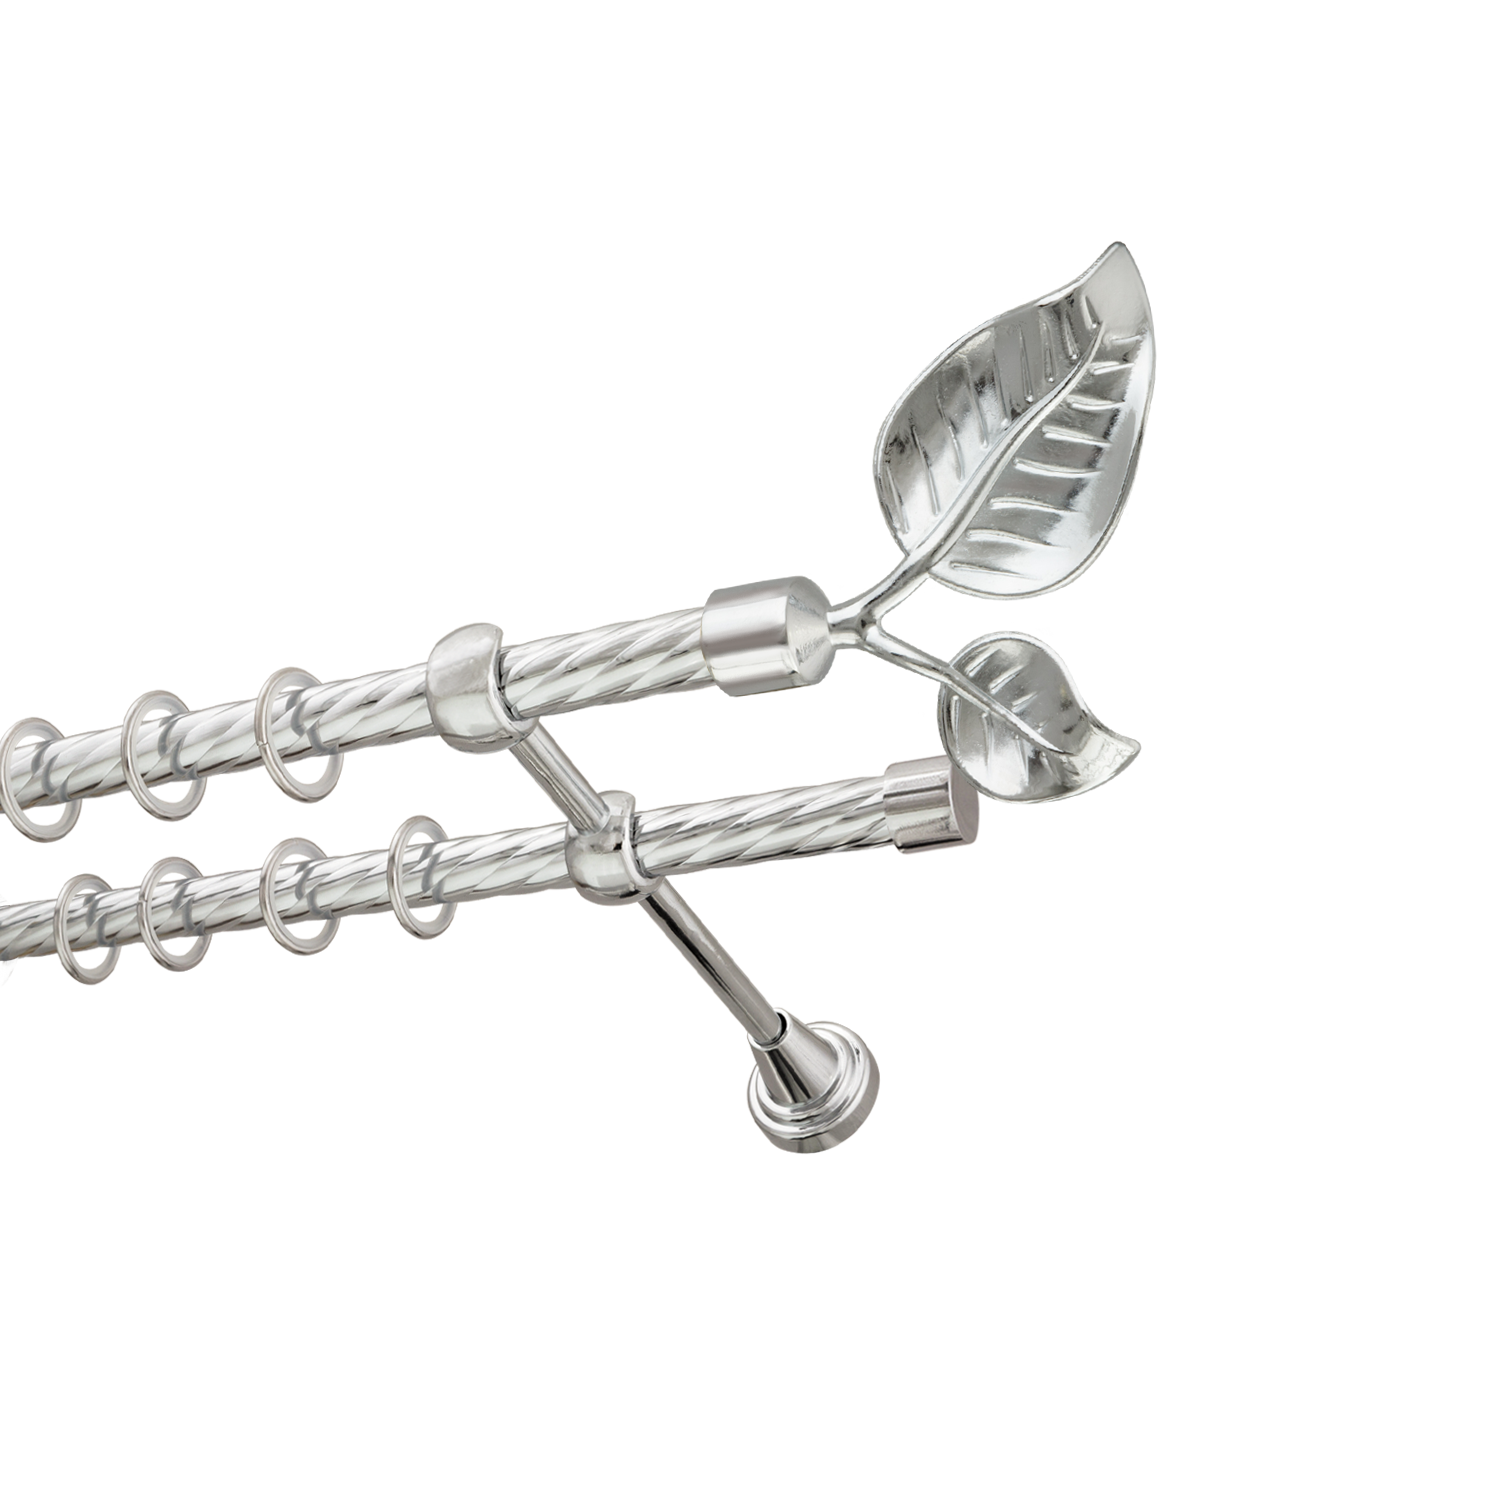 Металлический карниз для штор Тропик, двухрядный 16/16 мм, серебро, витая штанга, длина 180 см - фото Wikidecor.ru